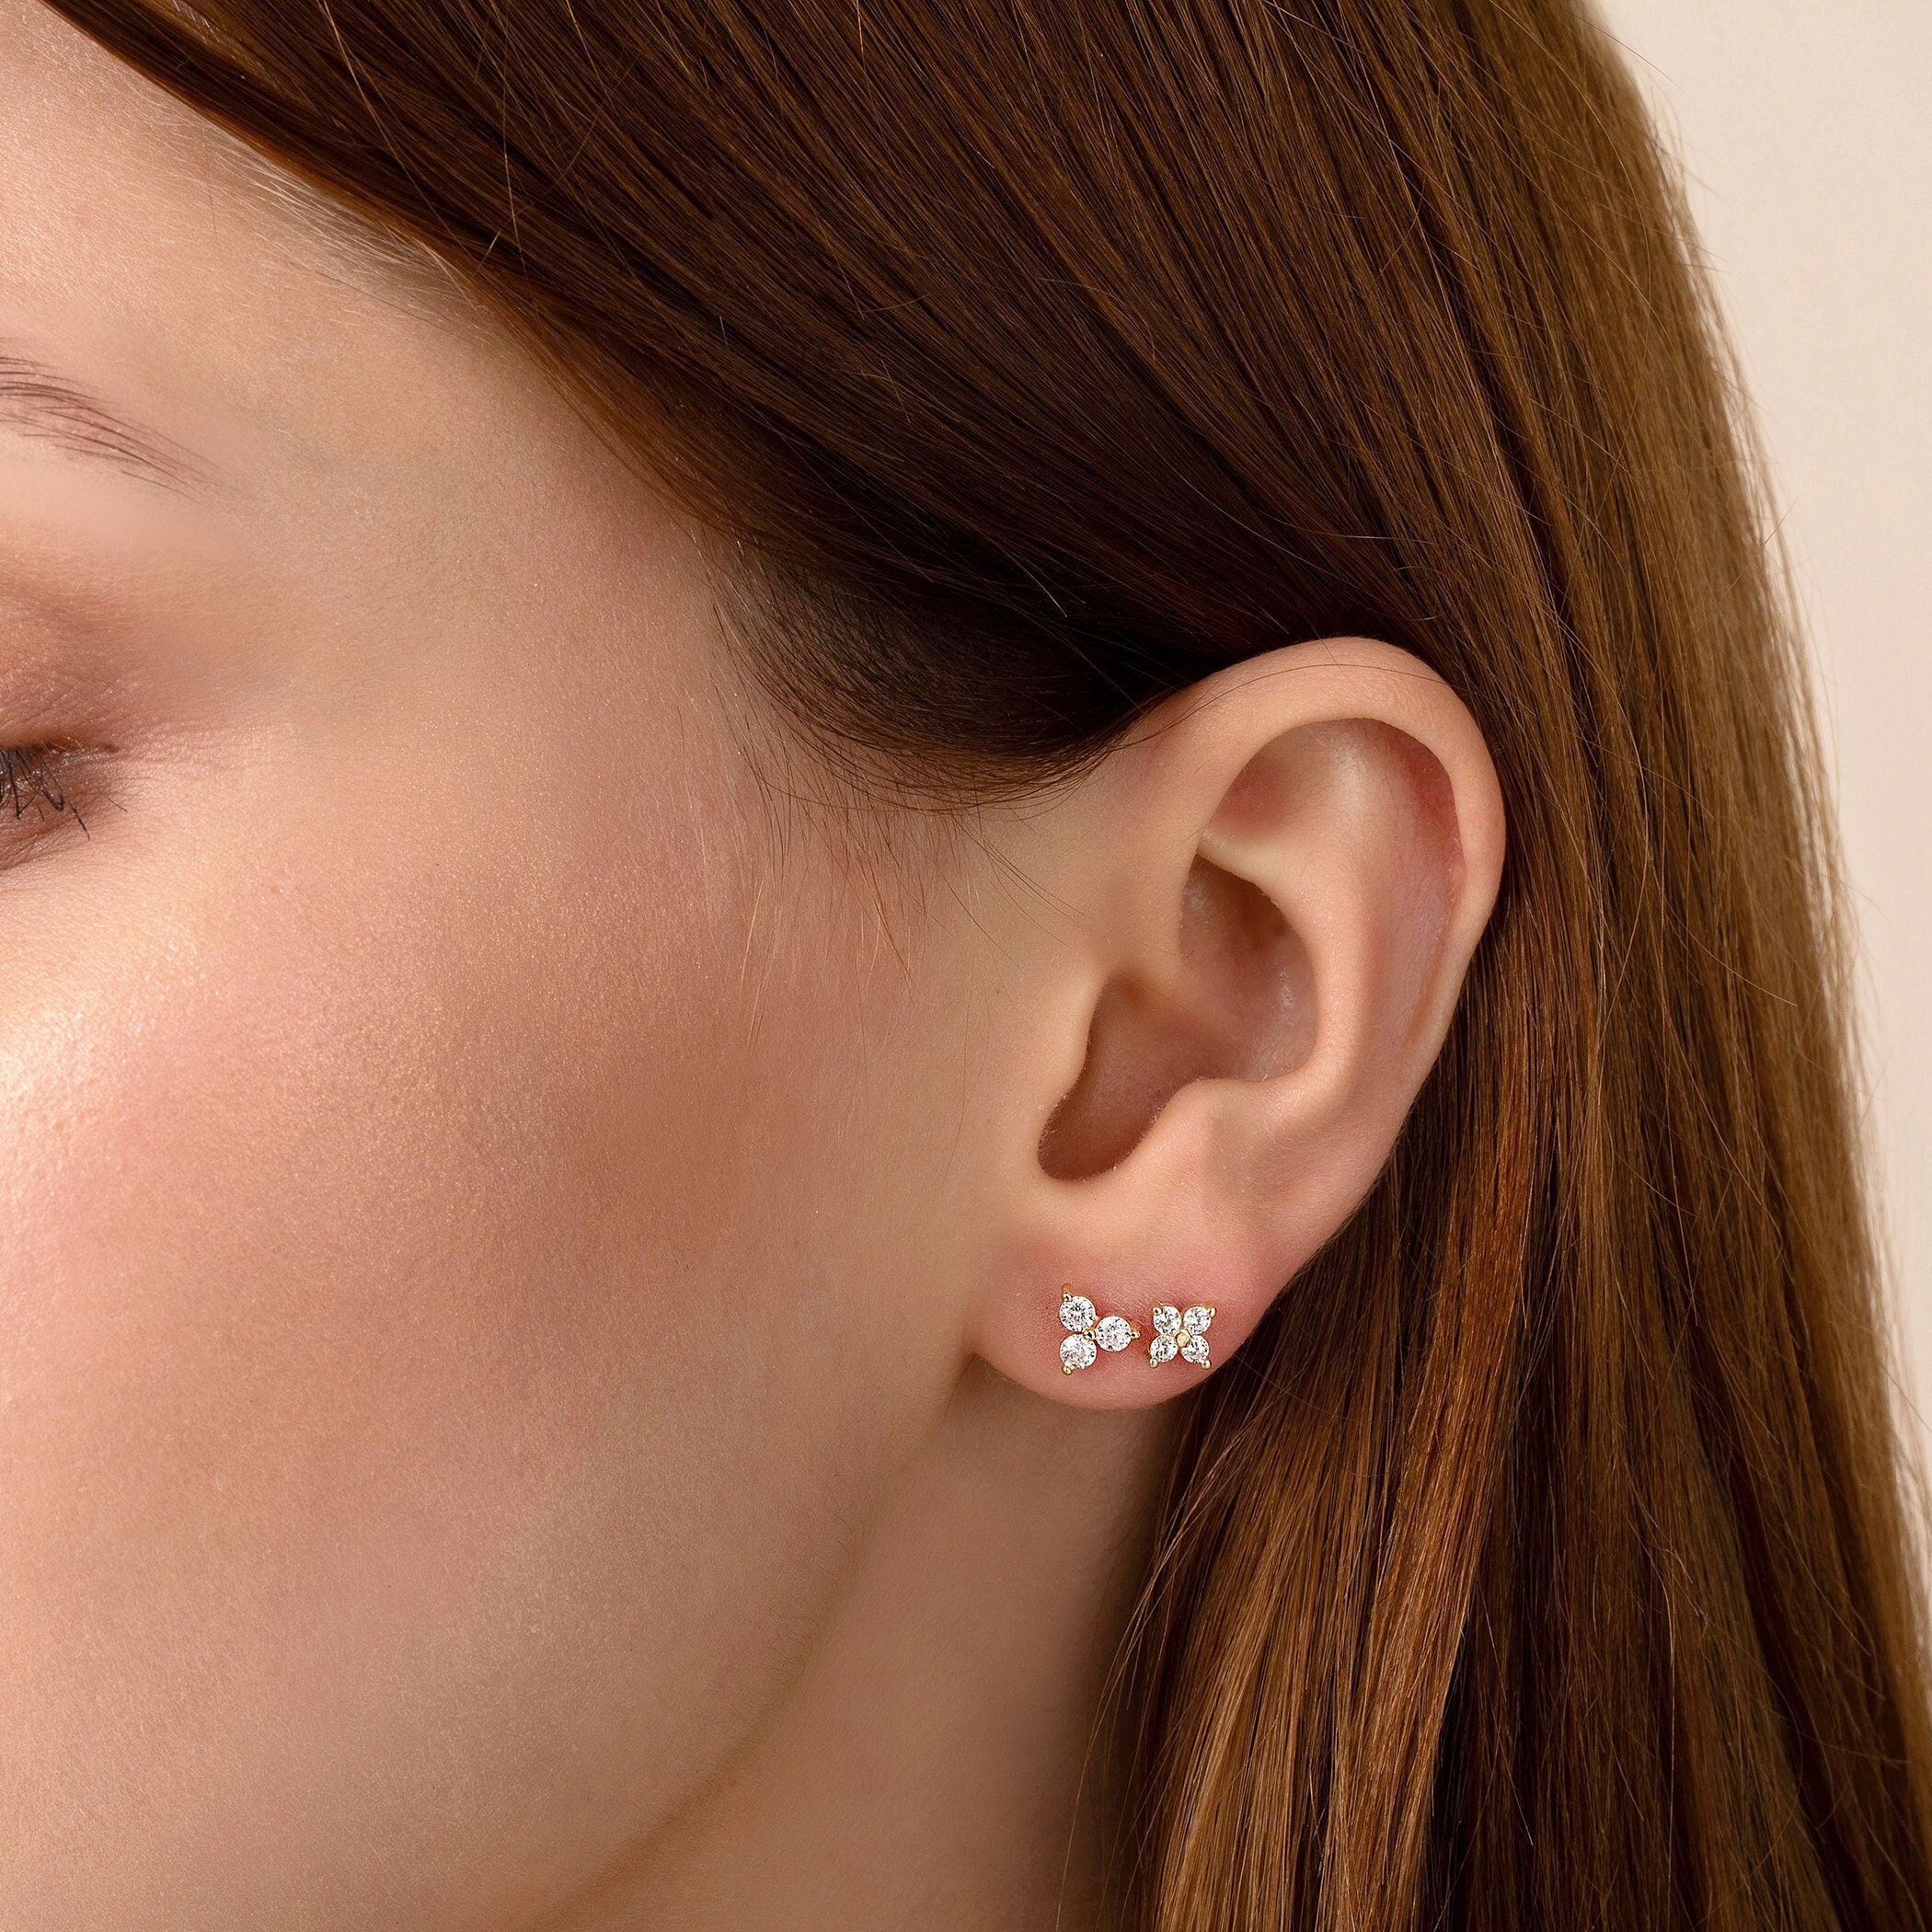 Silver earings - second tops, piercing | Ear cuff earings, Ear cuff,  Earrings